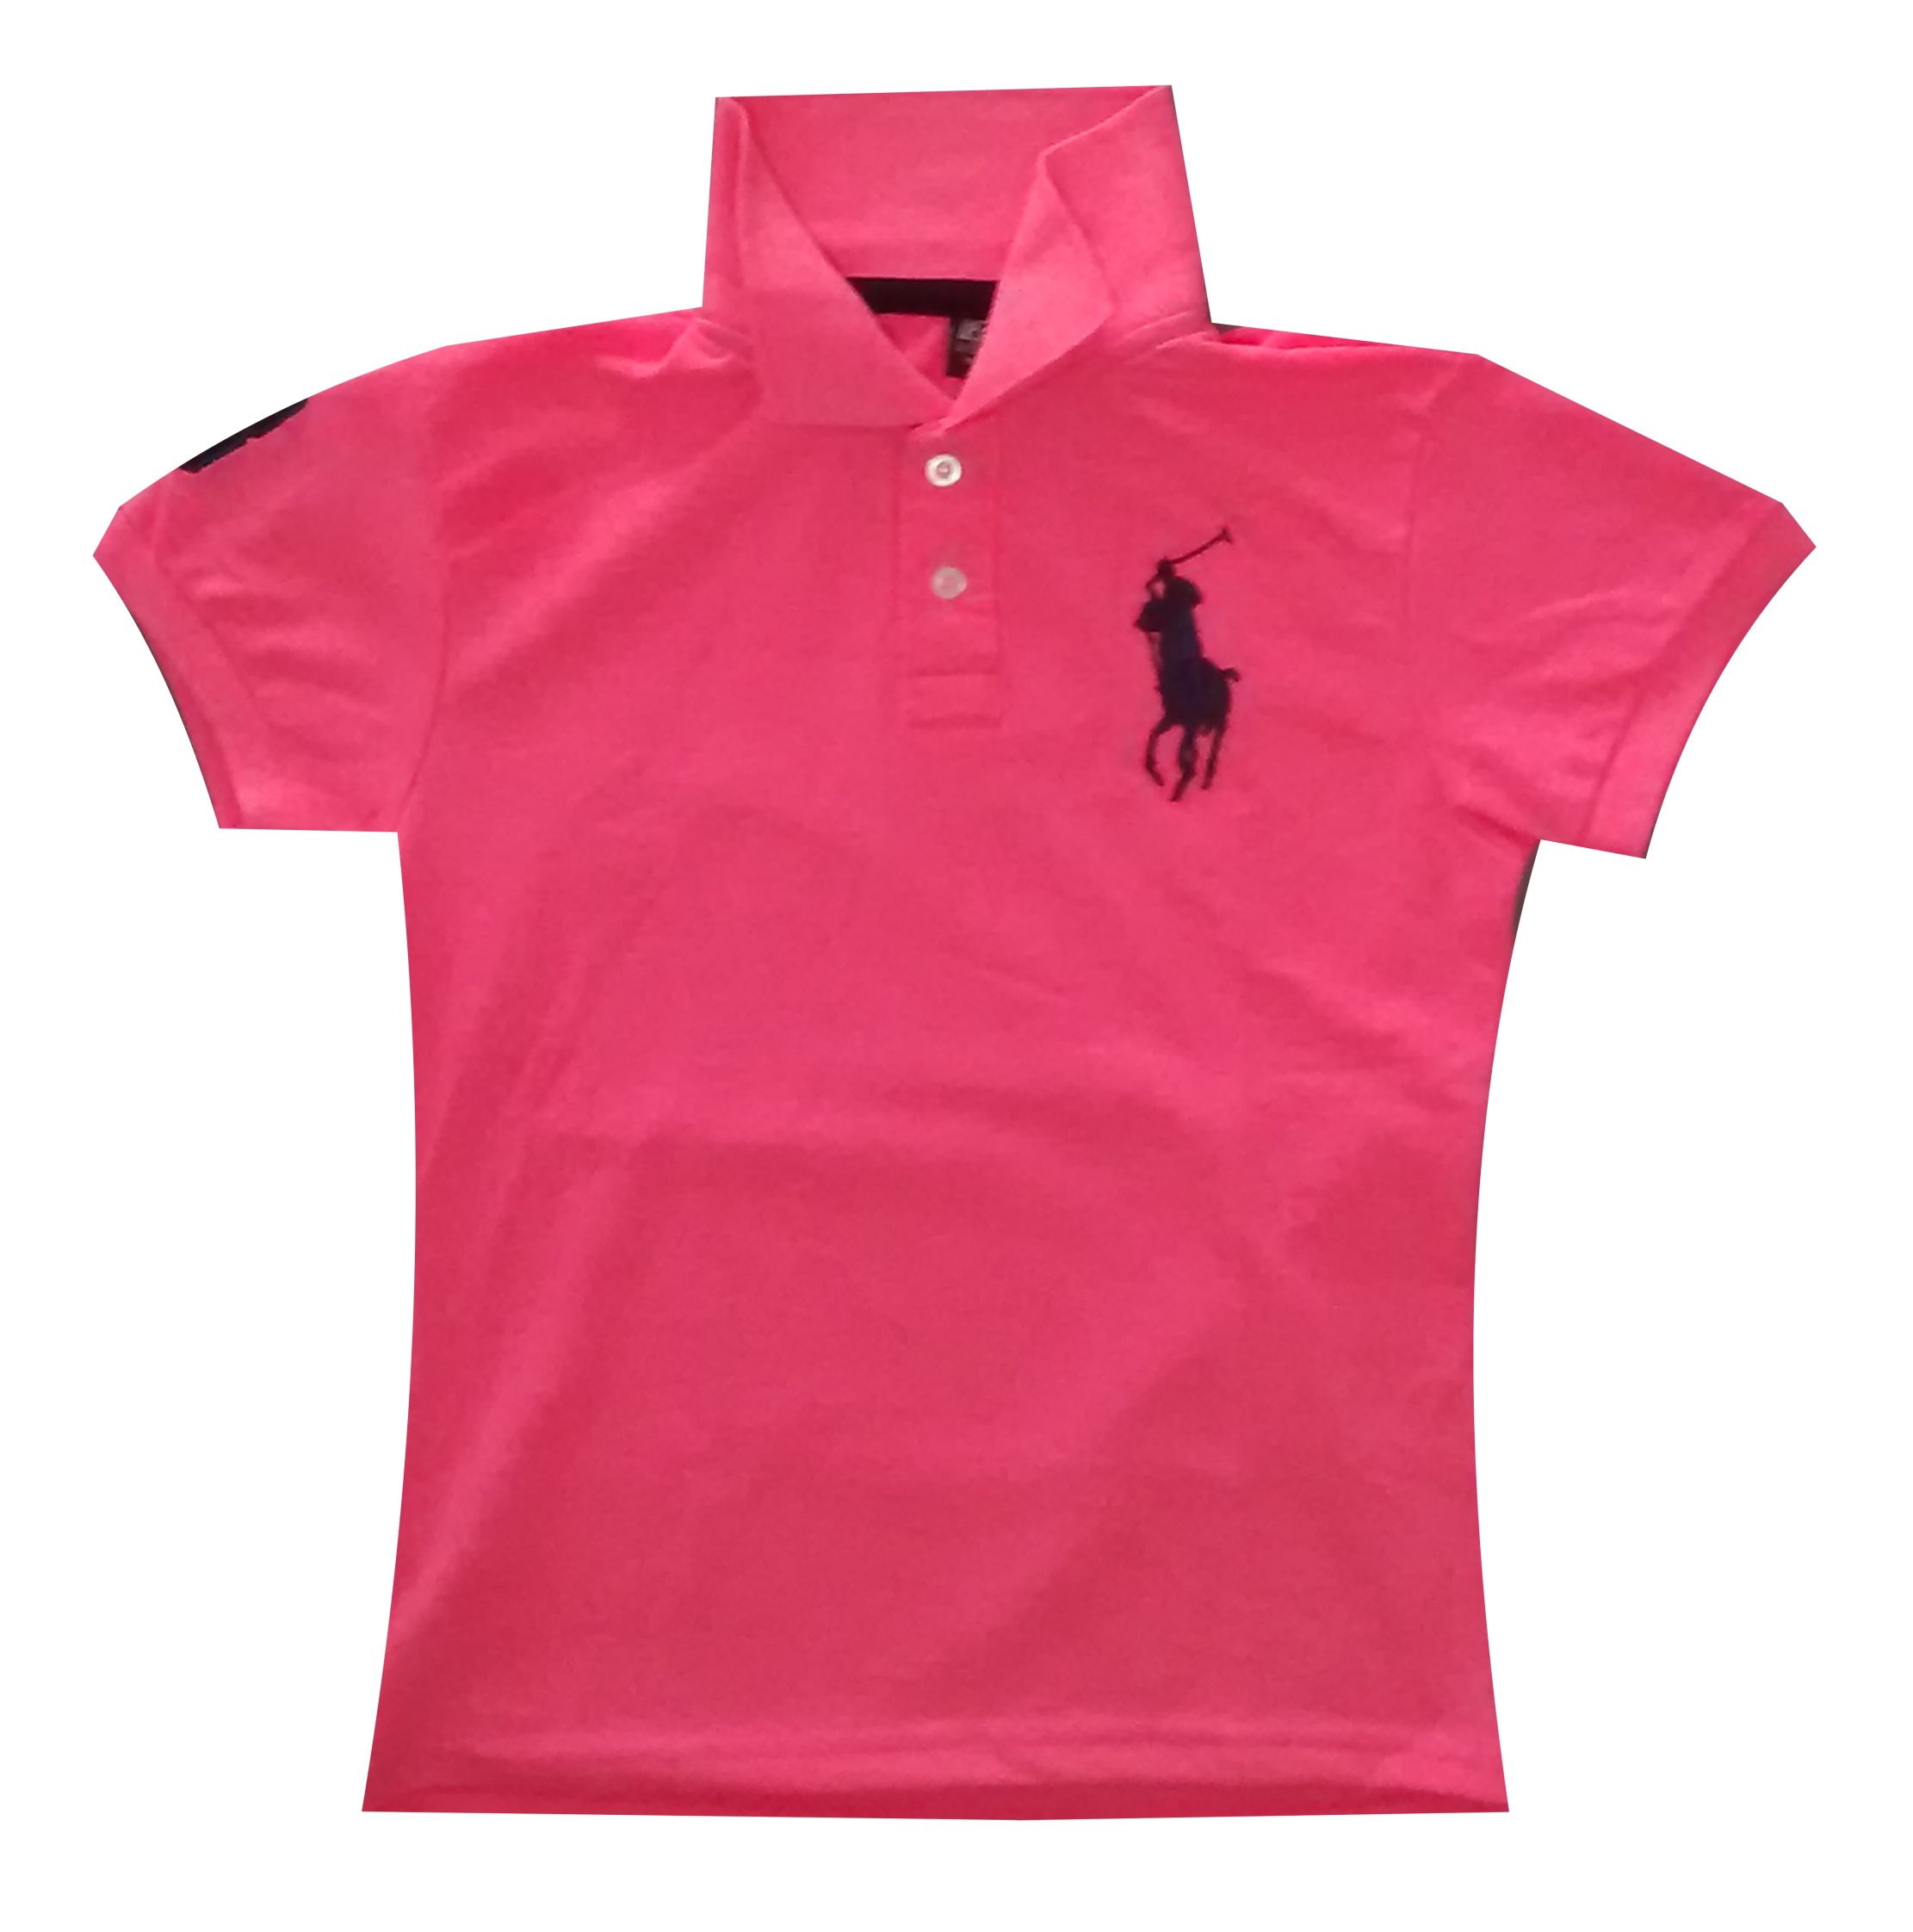 Camisa Polo Feminina Ralph Lauren - Tamanho G - Você é o nosso diferencial.